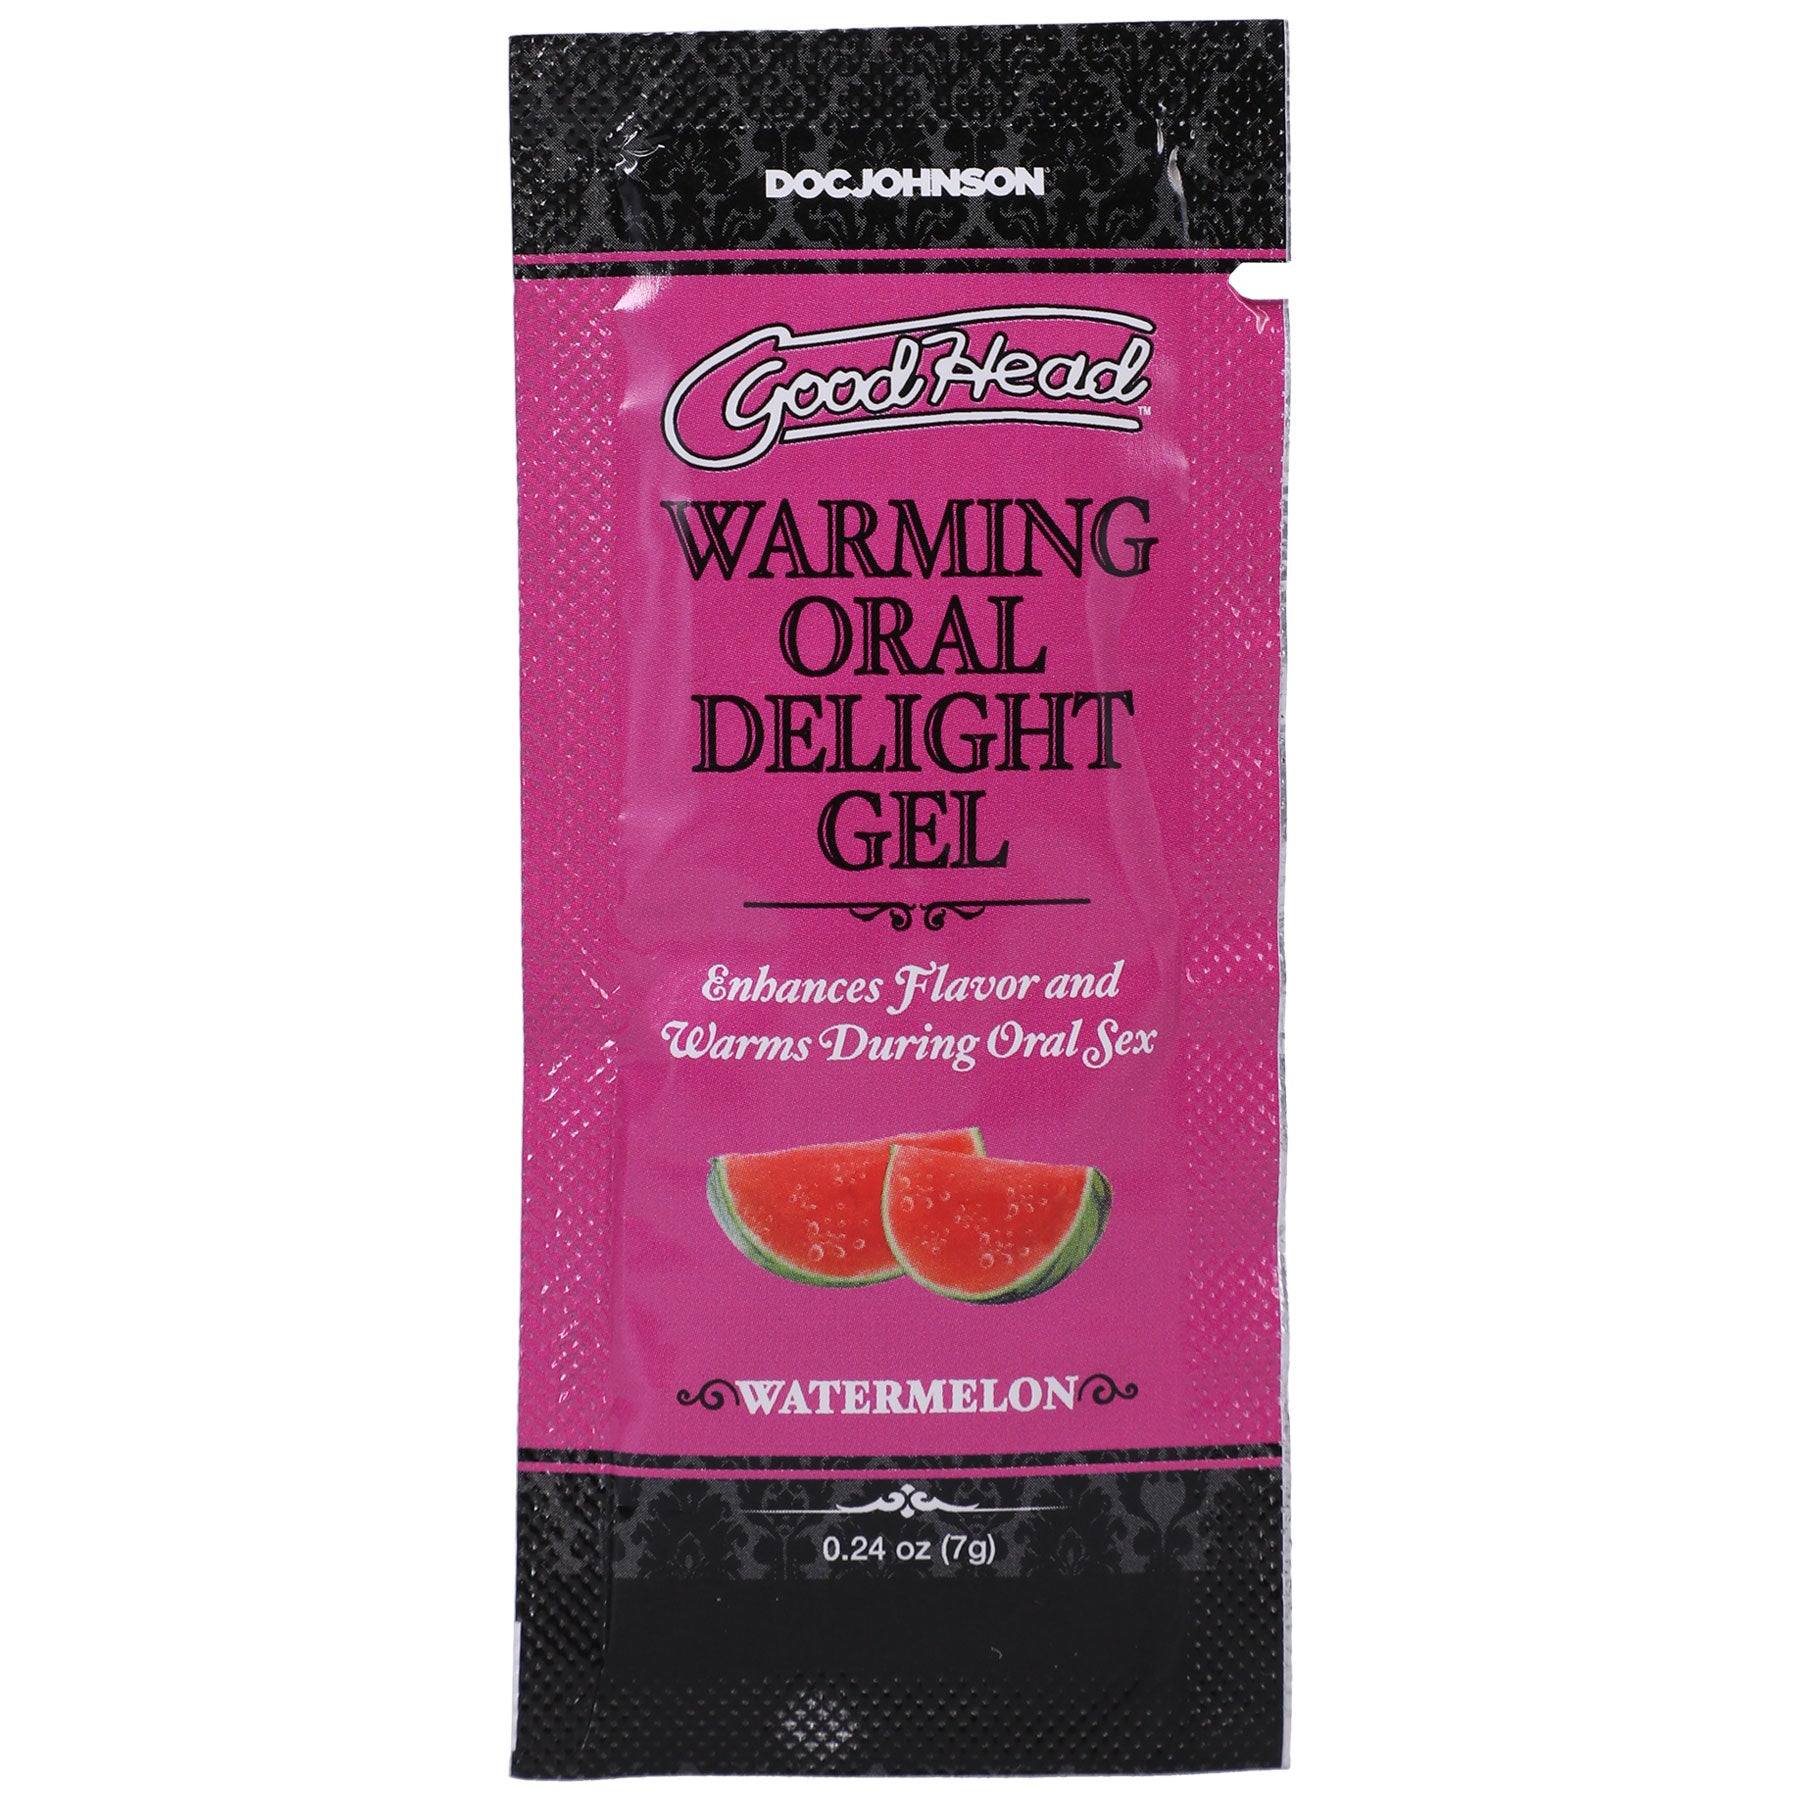 Goodhead - Warming Oral Delight Gel - Watermelon - 0.24 Oz-0